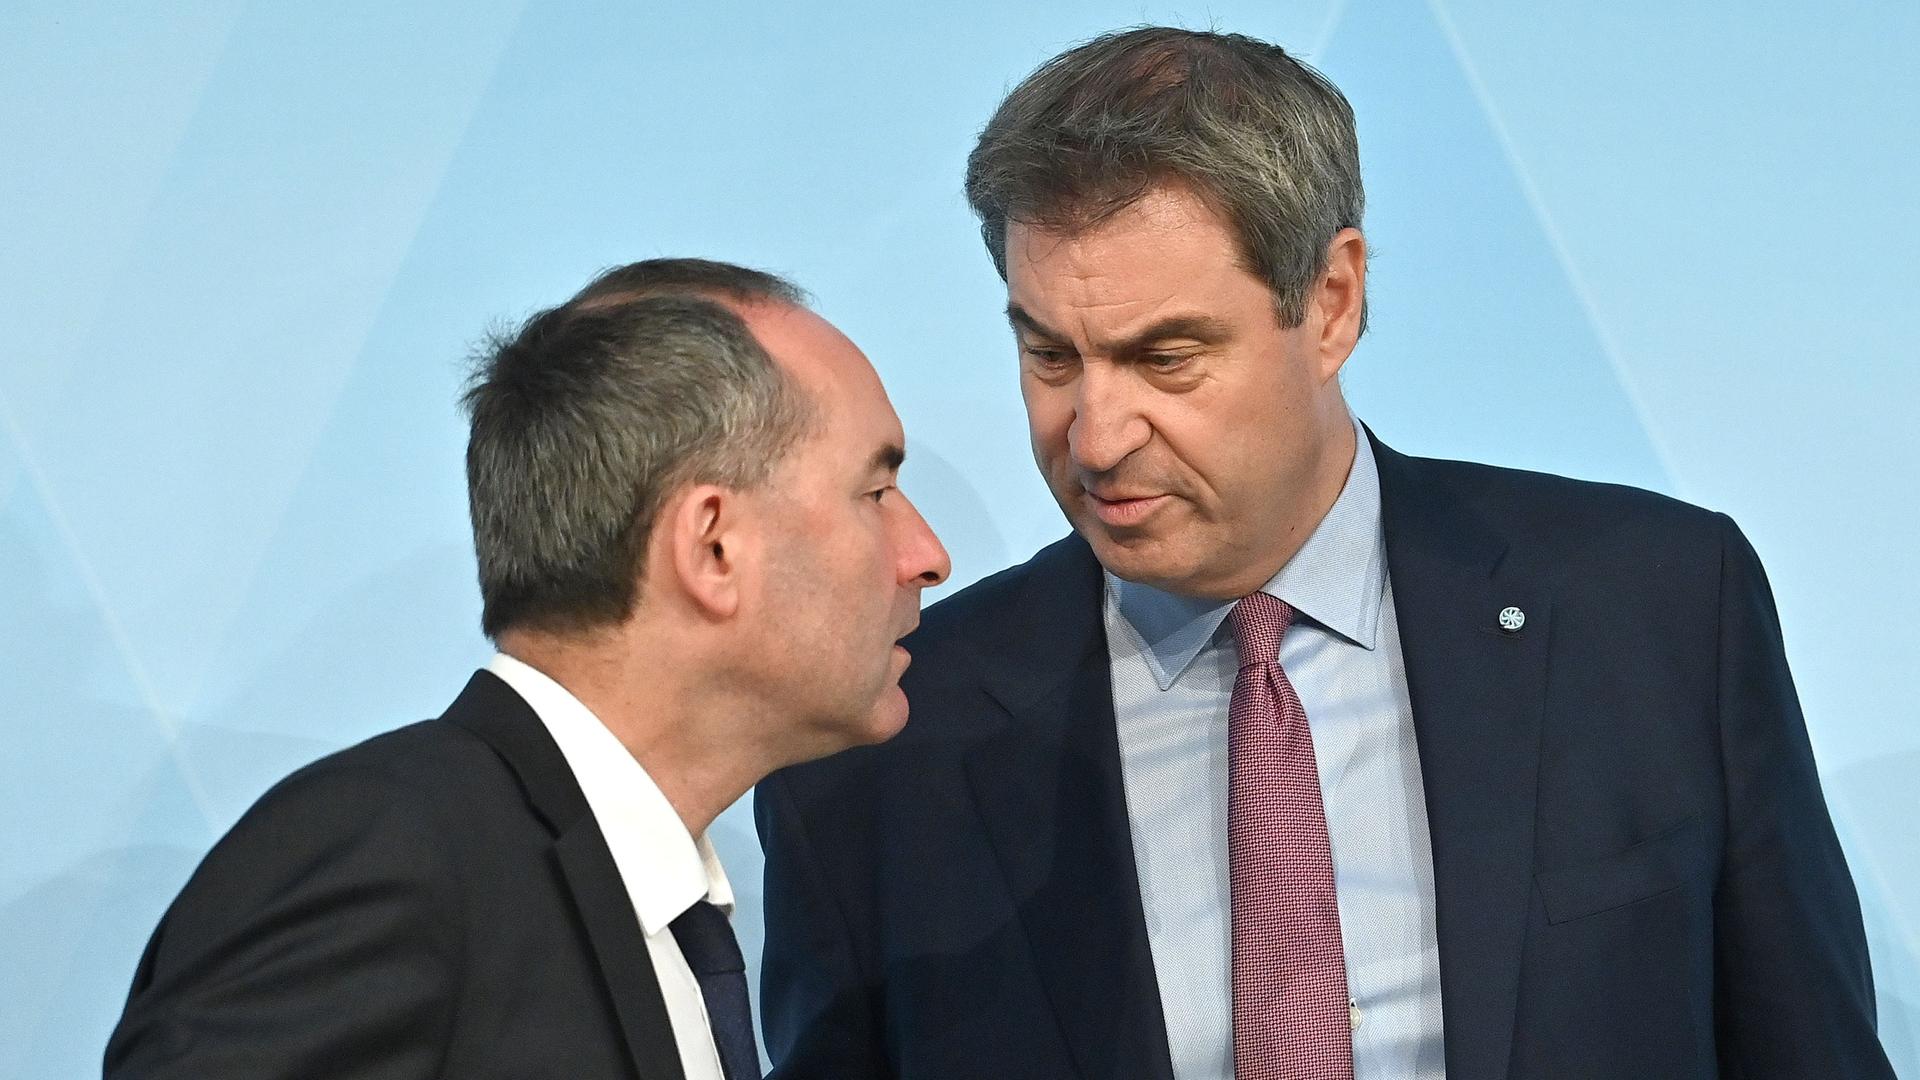 Der bayerische Regierungs-Chef Markus Söder schaut auf seinen Stelllvertreter Hubert Aiwanger herunter.